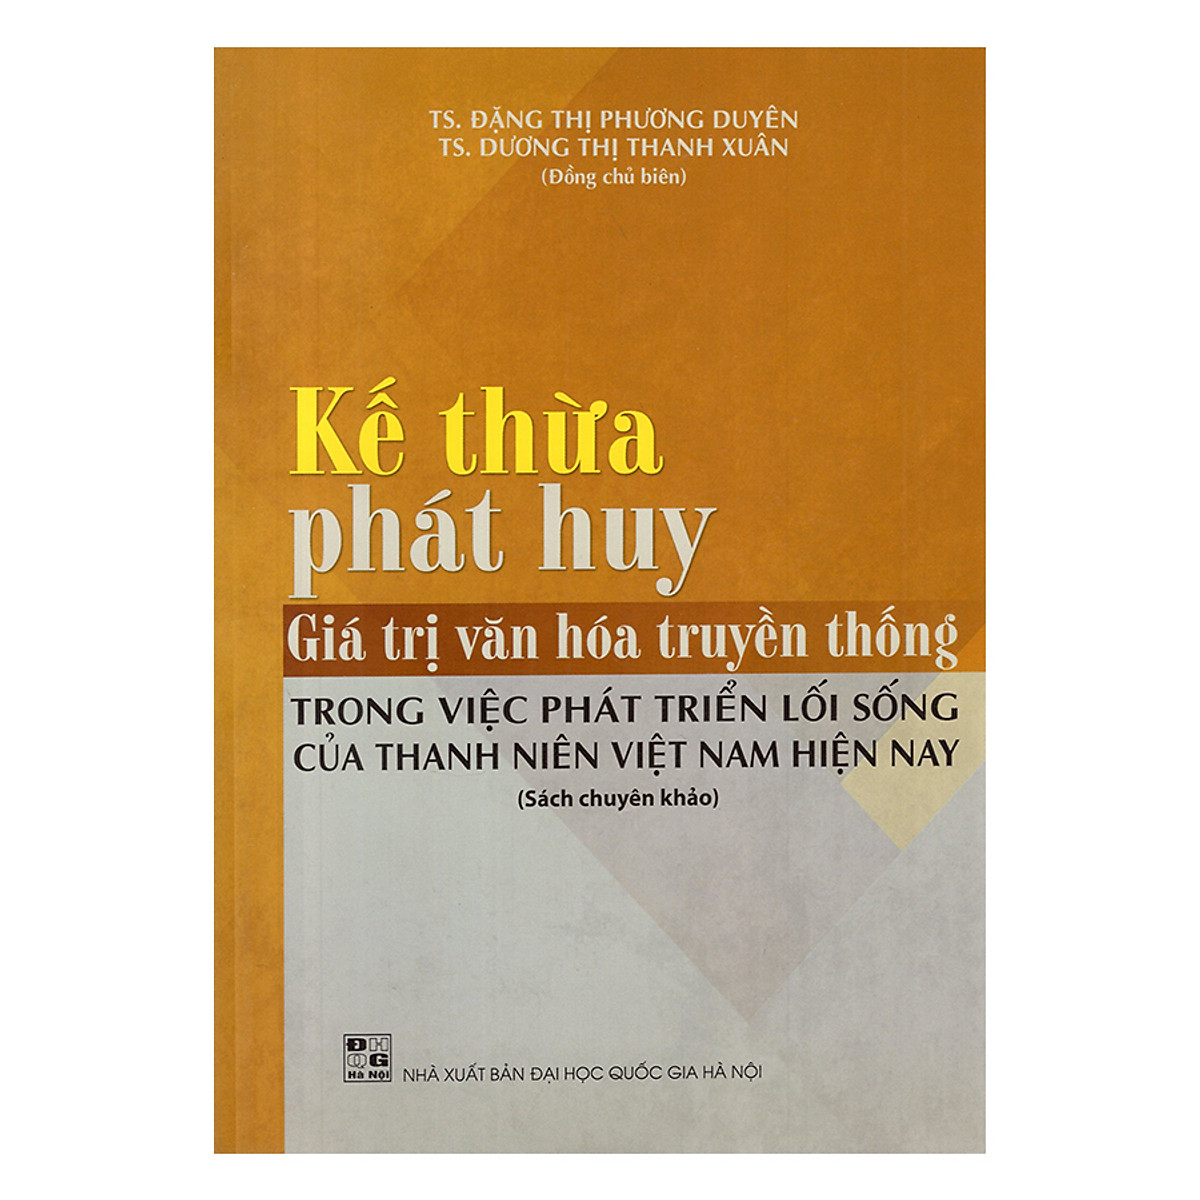 Kế Thừa, Phát Huy Giá Trị Văn Hóa Truyền Thống Trong Việc Phát Triển Lối Sống Của Thanh Niên Việt Nam Hiện Nay